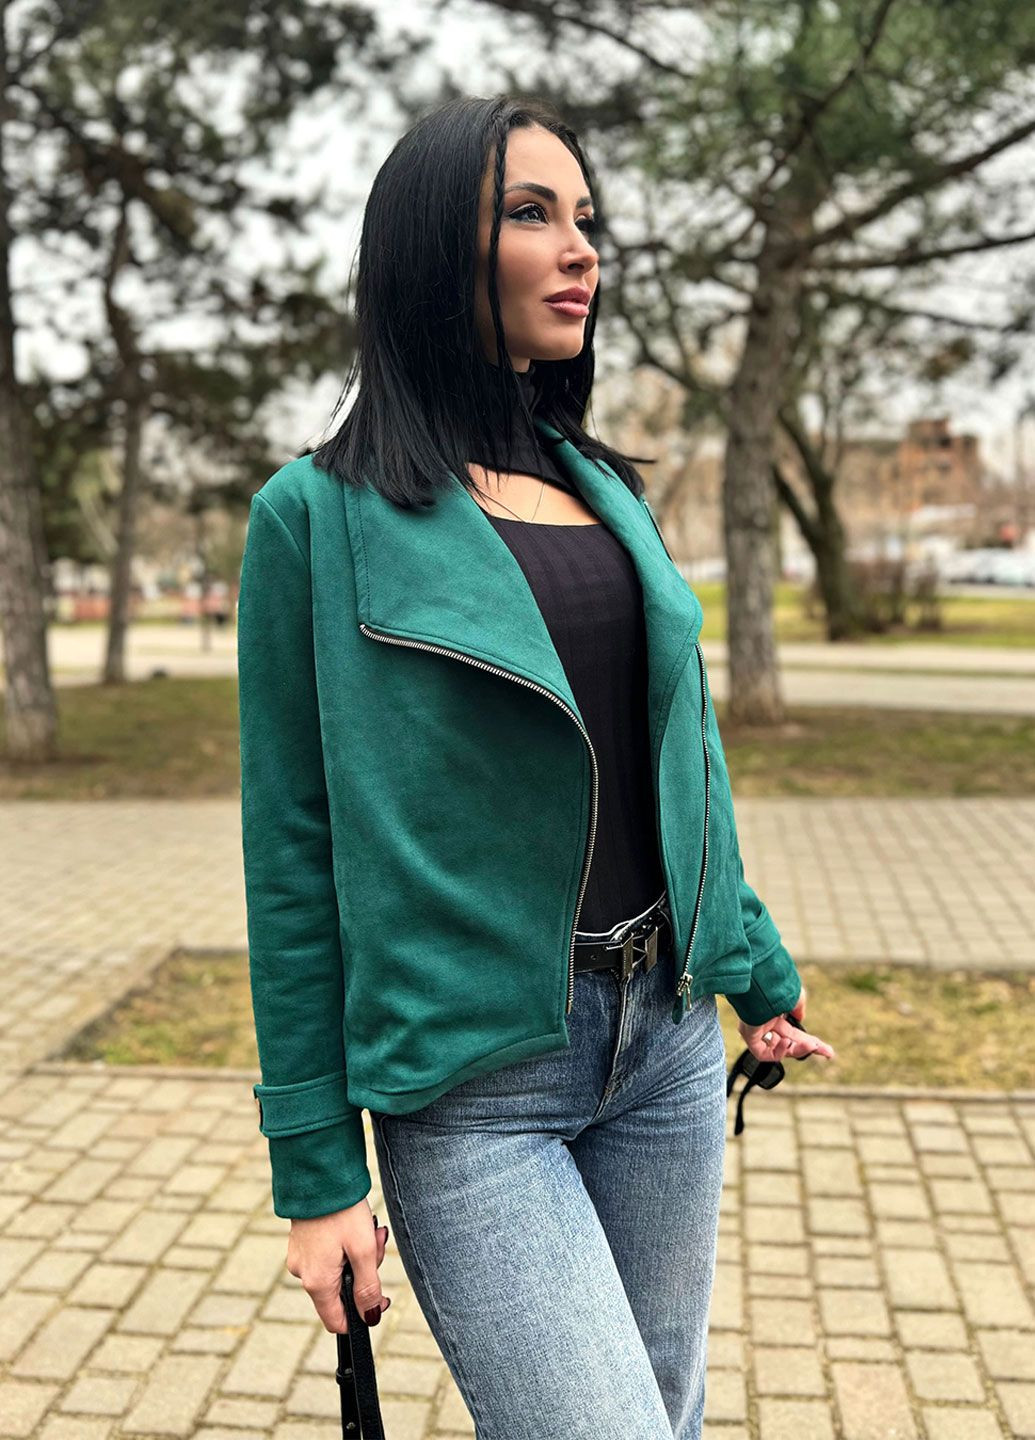 Зеленая куртка-жакет косуха Fashion Girl Nessa